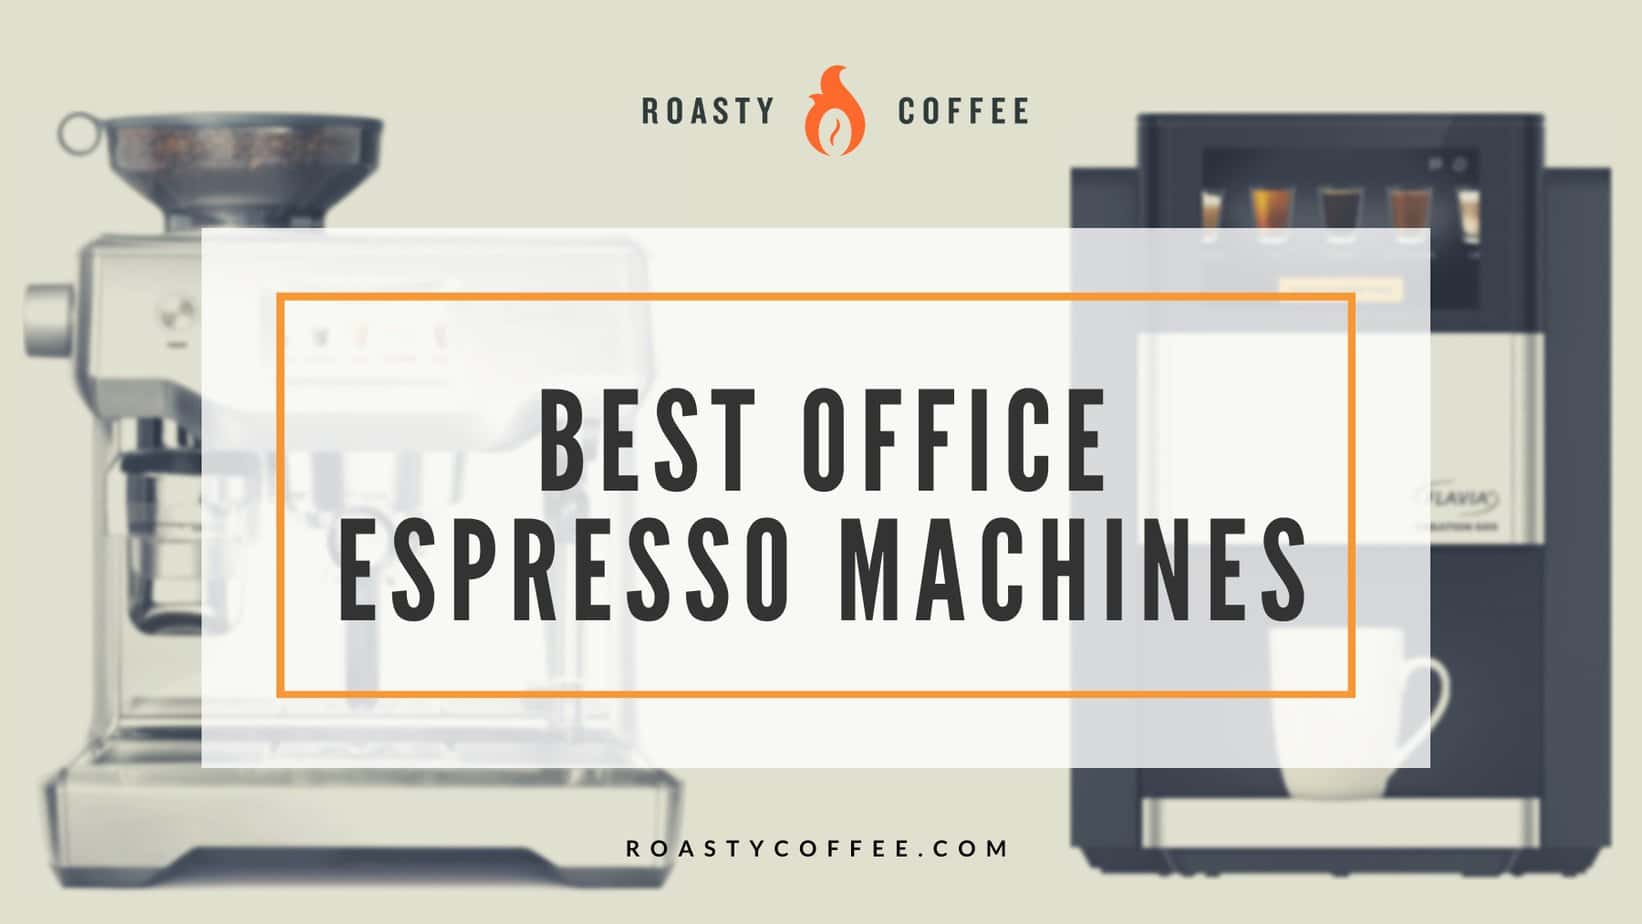 最佳办公Espresso机